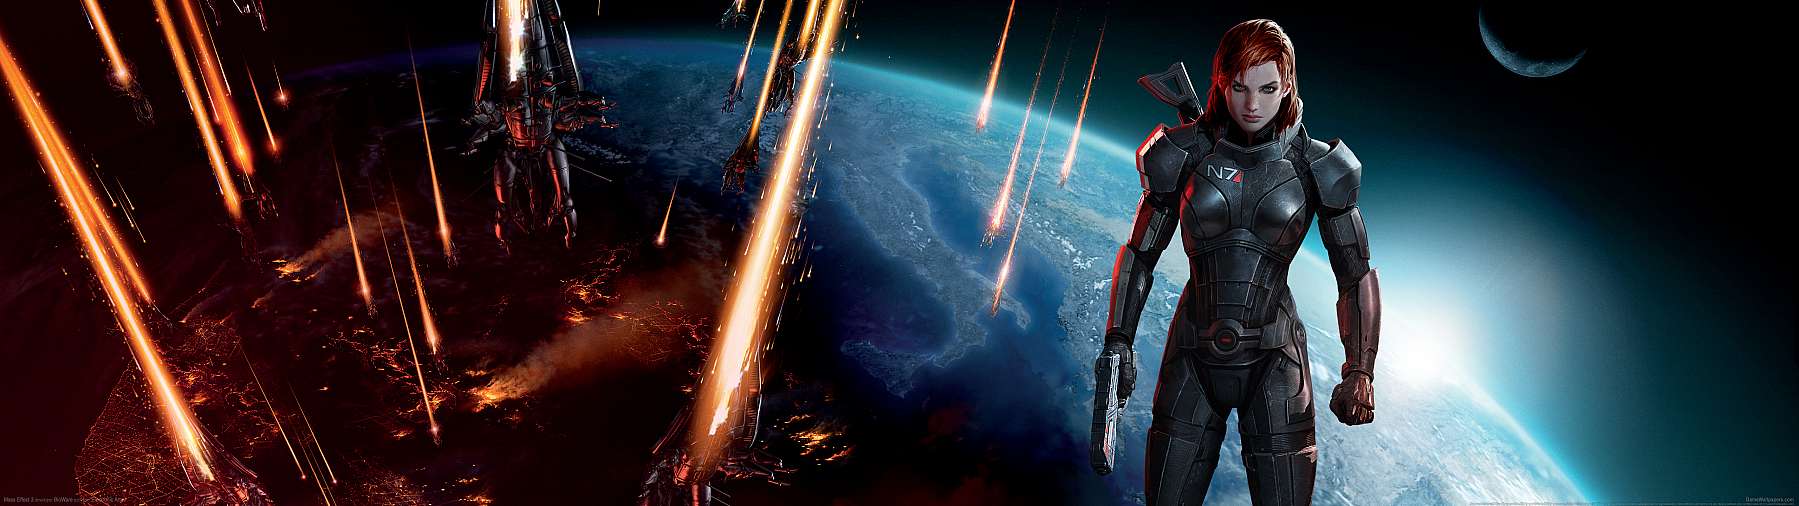 Mass Effect 3 superwide fond d'cran 11